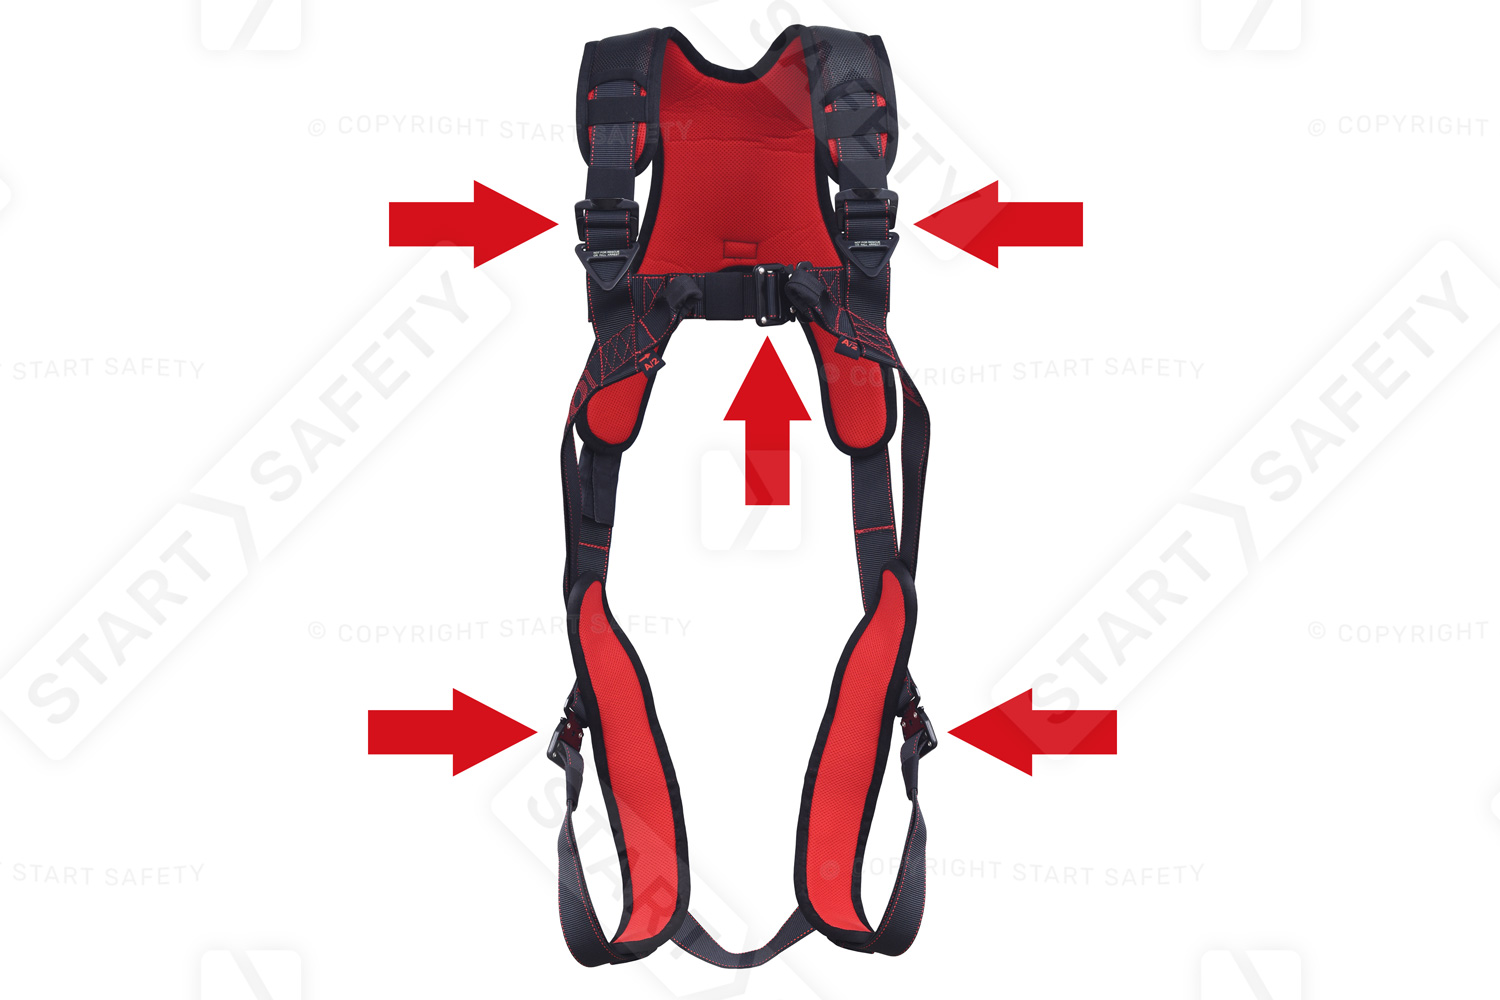 Five Adjustment Points On The JSP K2 Harness